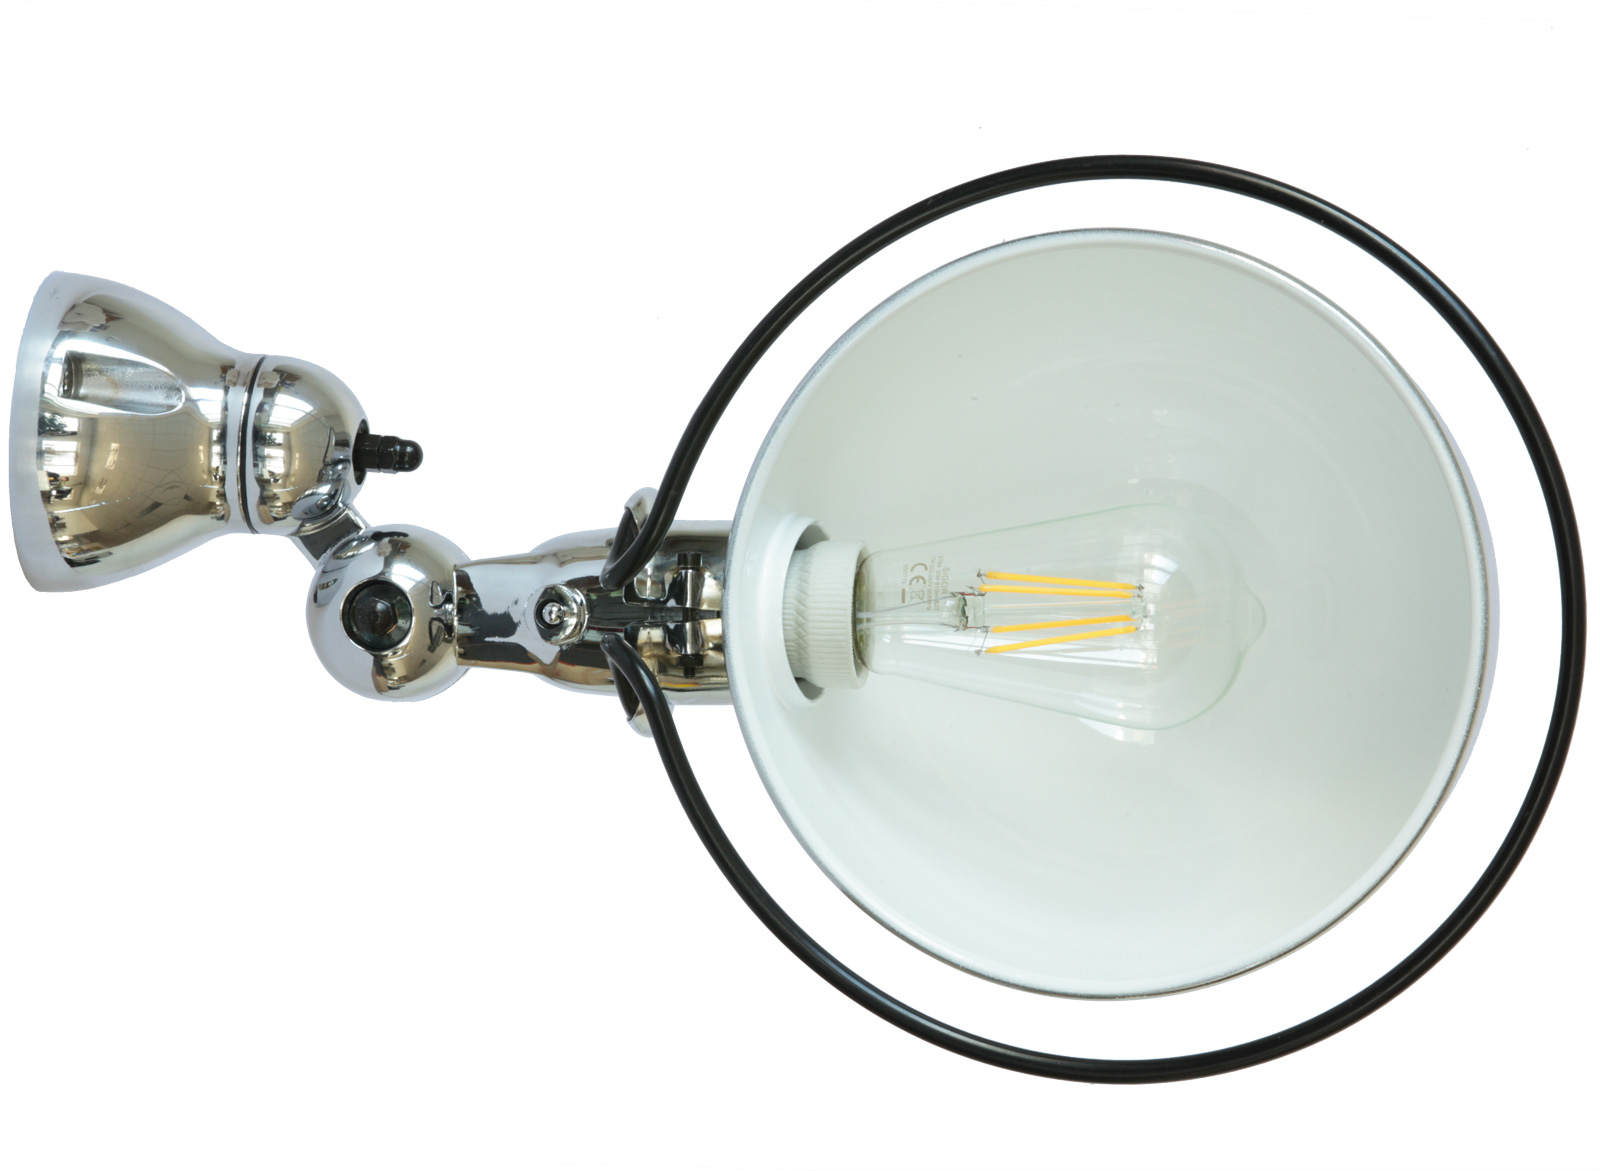 Flexibler Gelenkwandstrahler LOFT mit Halbkugel-Reflektor: Großes Modell mit Kippschalter in Stahl verchromt, groß genug für den Einsatz einer Edisonbirne